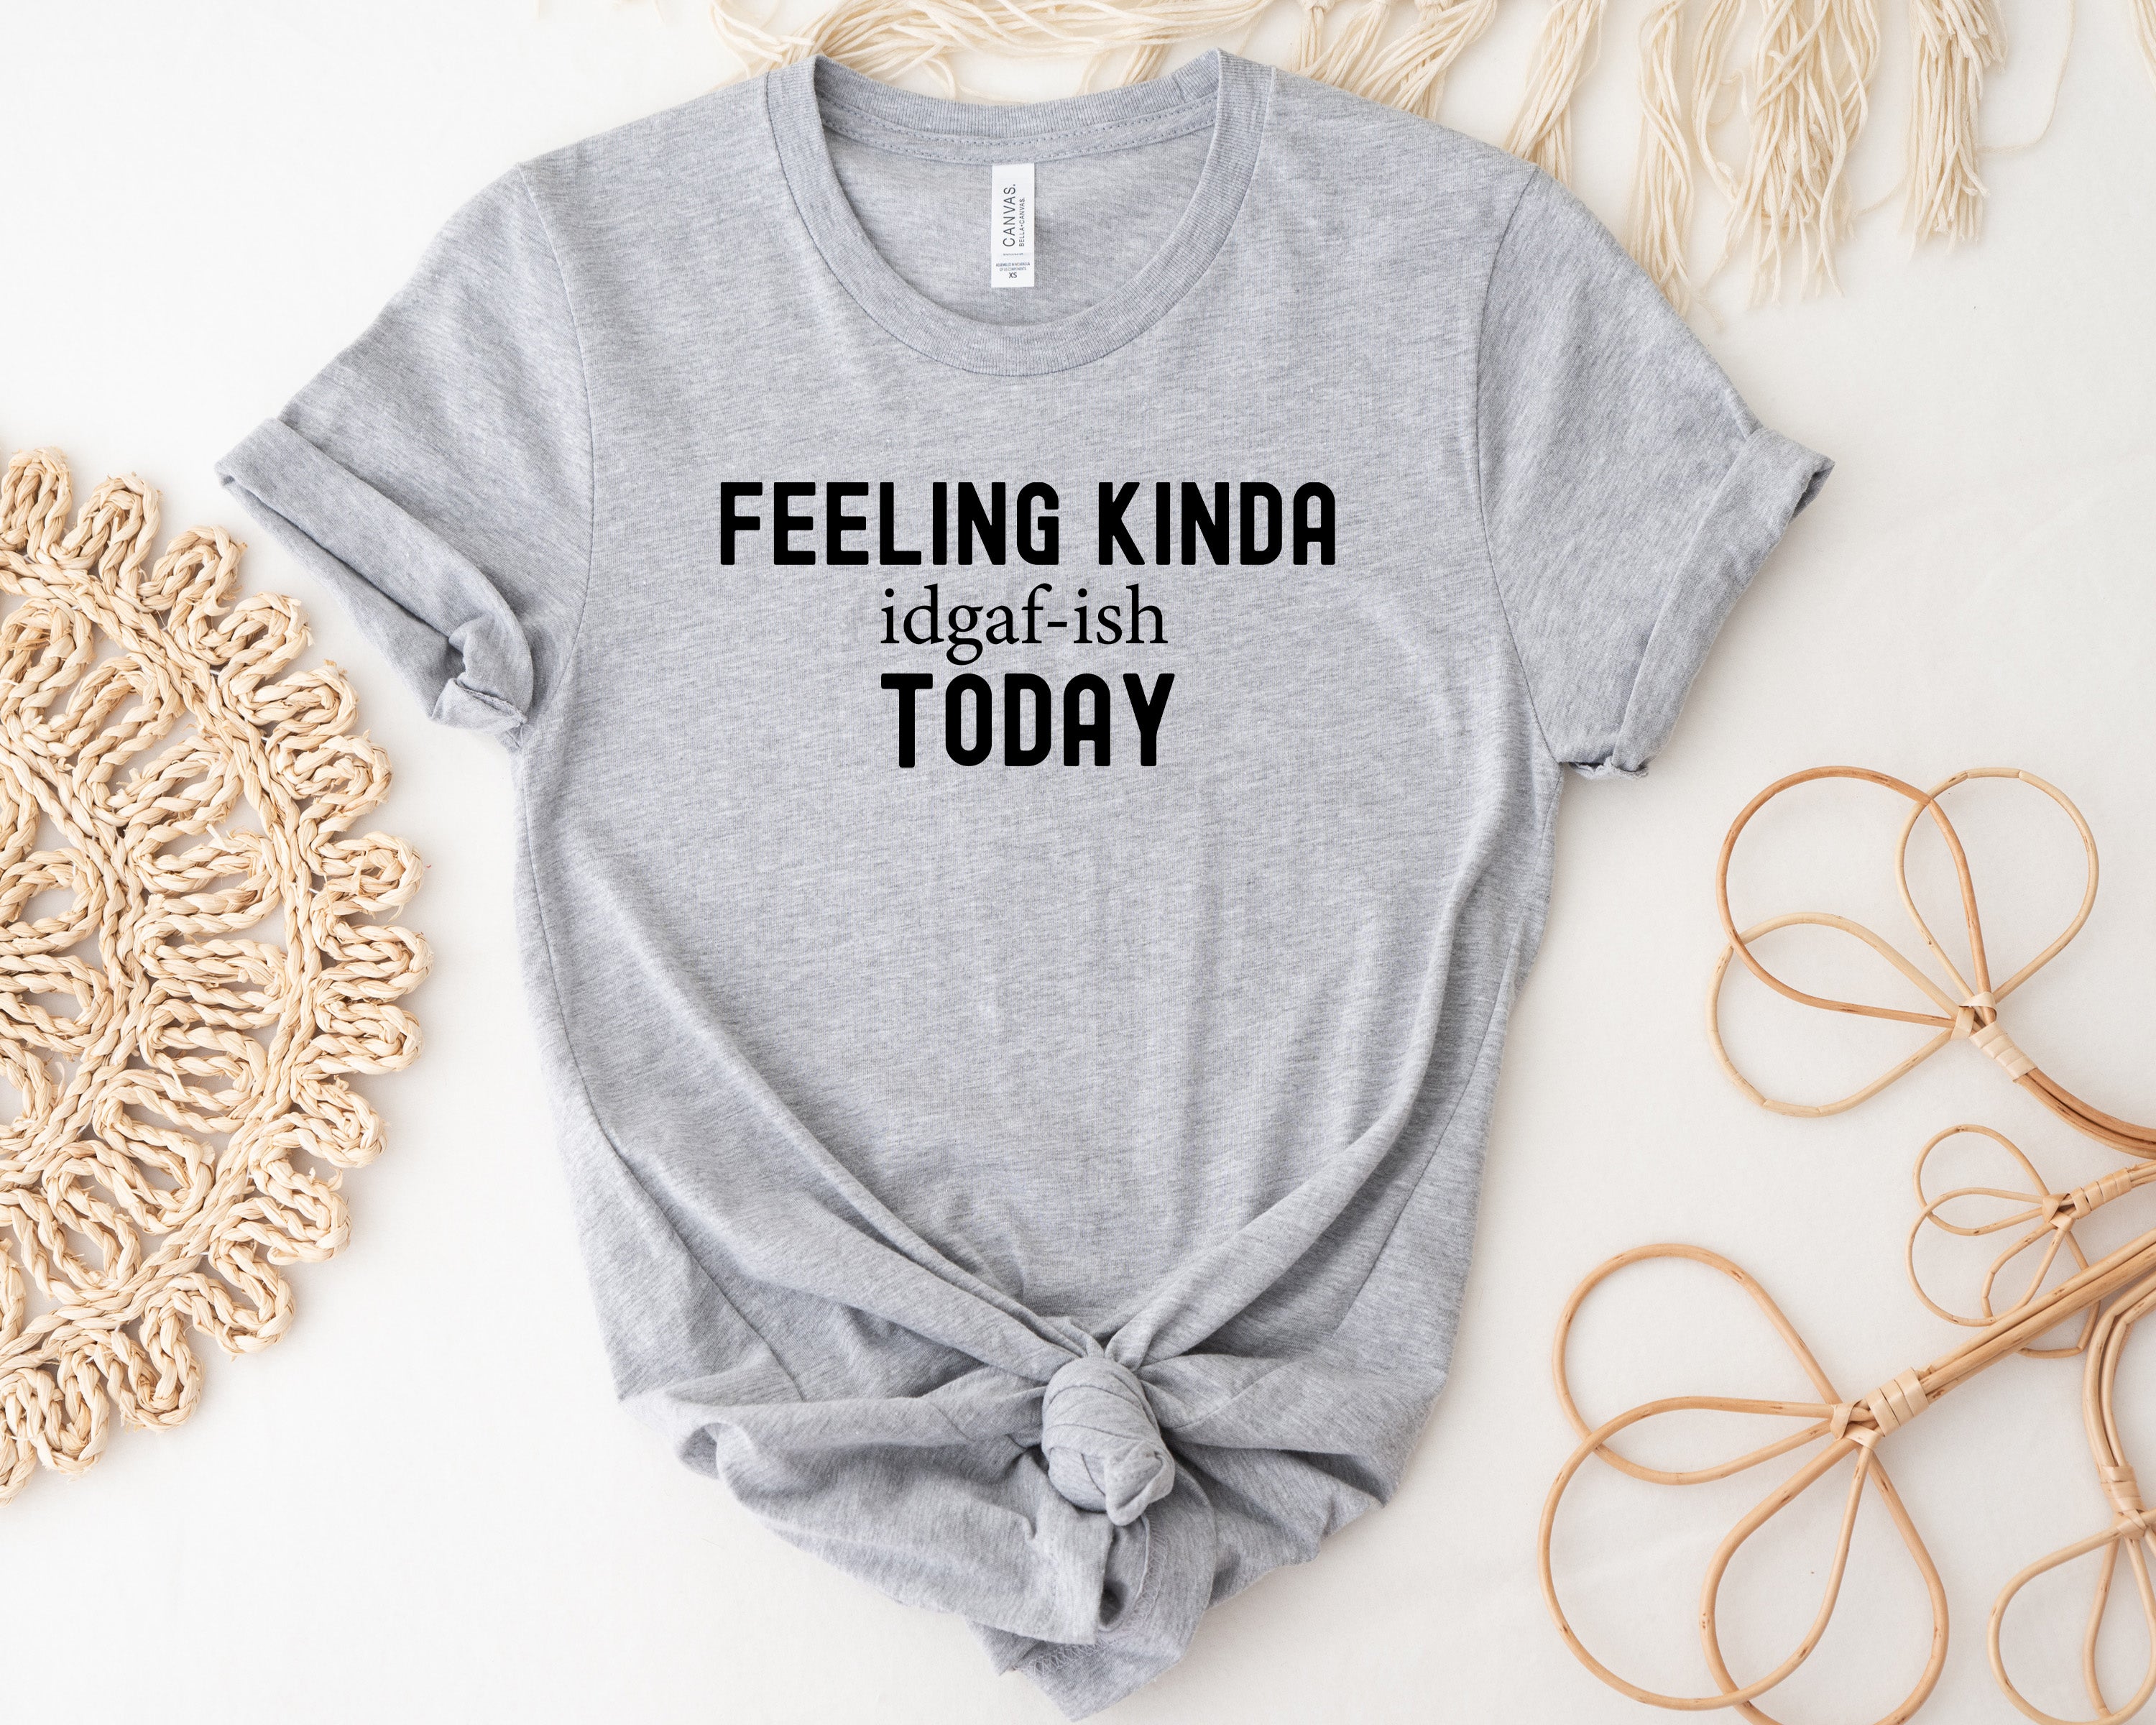 Feeling Kinda IDGAF-ish Today| Sarcastic Shirt For Women